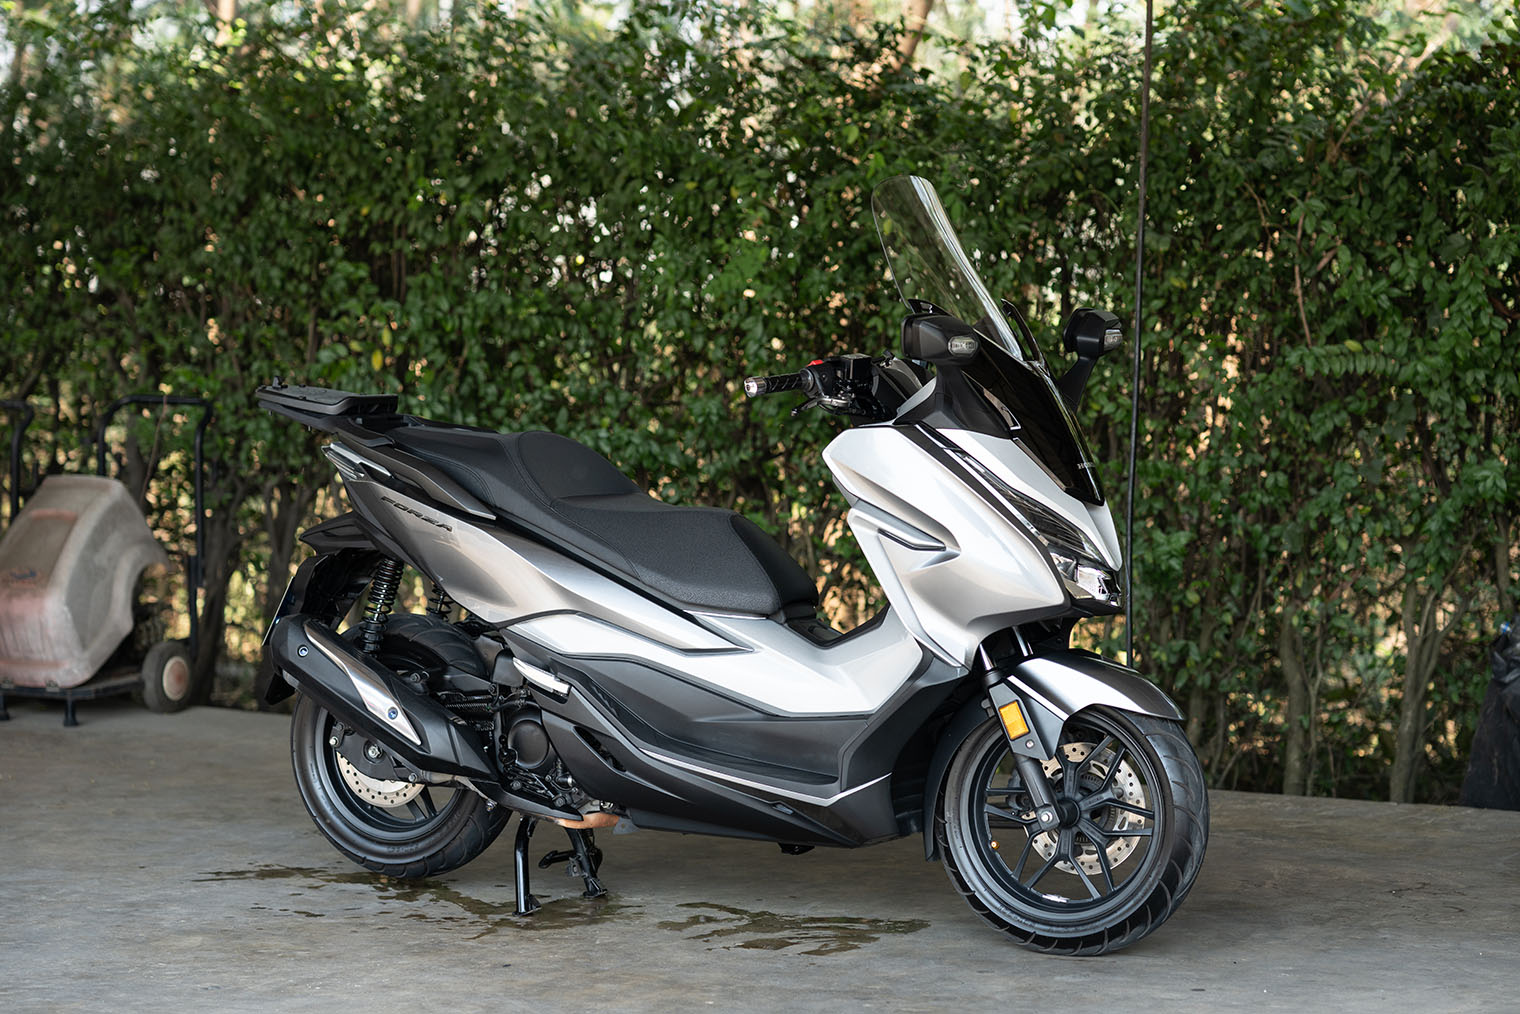 У макси-скутеров, таких как Honda Forza, достаточно мощный мотор объемом 300⁠—⁠350 см³ и мощностью 25⁠—⁠30 л. с. Развитый пластиковый обвес защищает от ветра и дождя. Фотография: BELL MALINEE / Shutterstock / FOTODOM